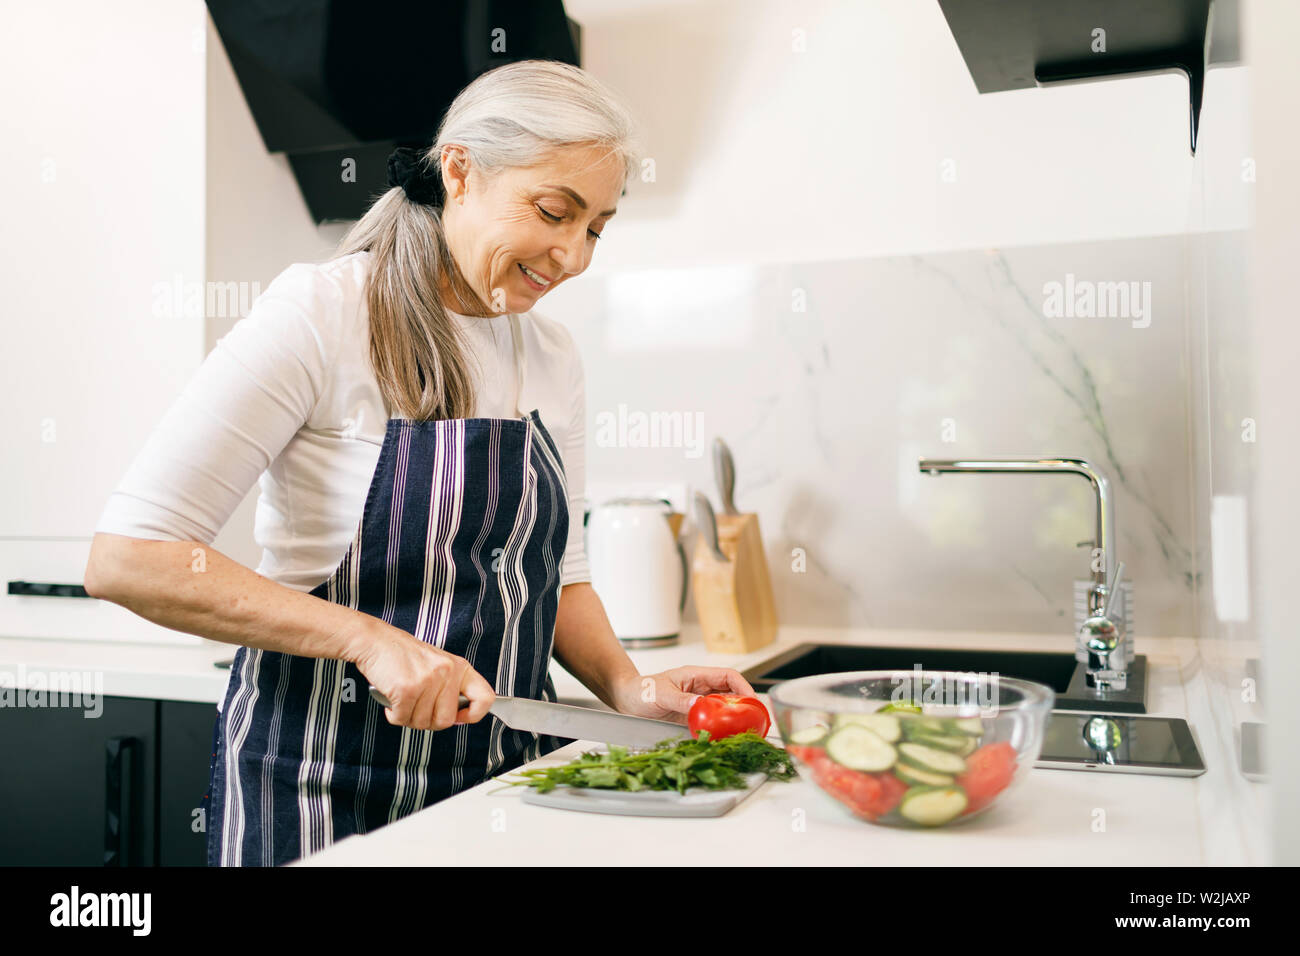 Lächelnde ältere Frau mit grauen Haaren im Vorfeld vorbereiten Salat in der Küche Stockfoto